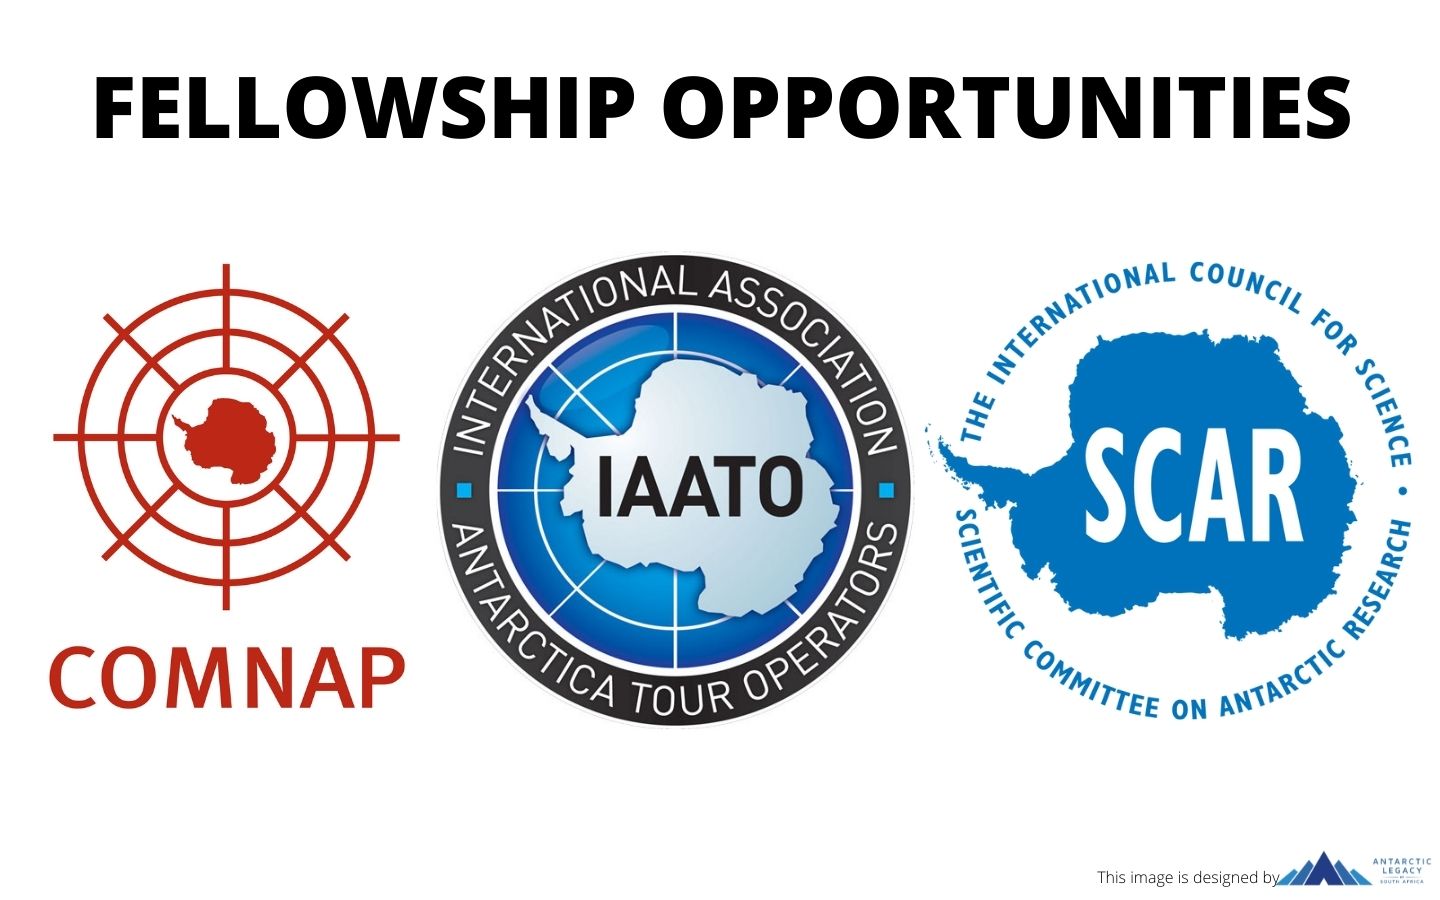 COMNAP, IAATO & SCAR Fellowships – APPLY NOW